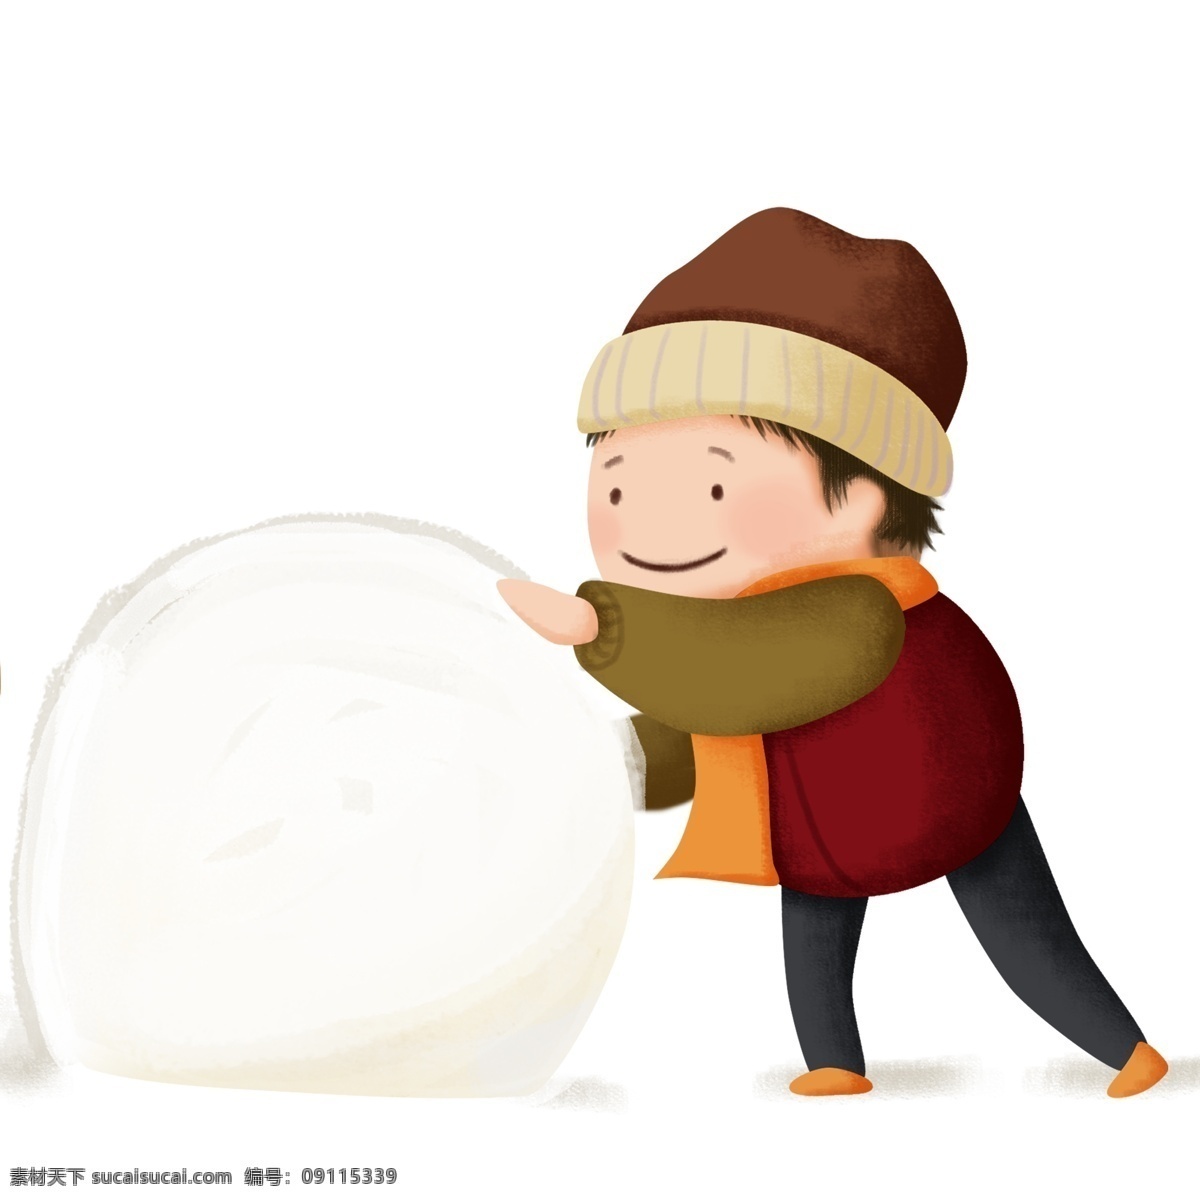 冬天 一个 玩 雪球 小男 孩子 免 抠 图 免抠图 男孩 带 帽子 男孩子